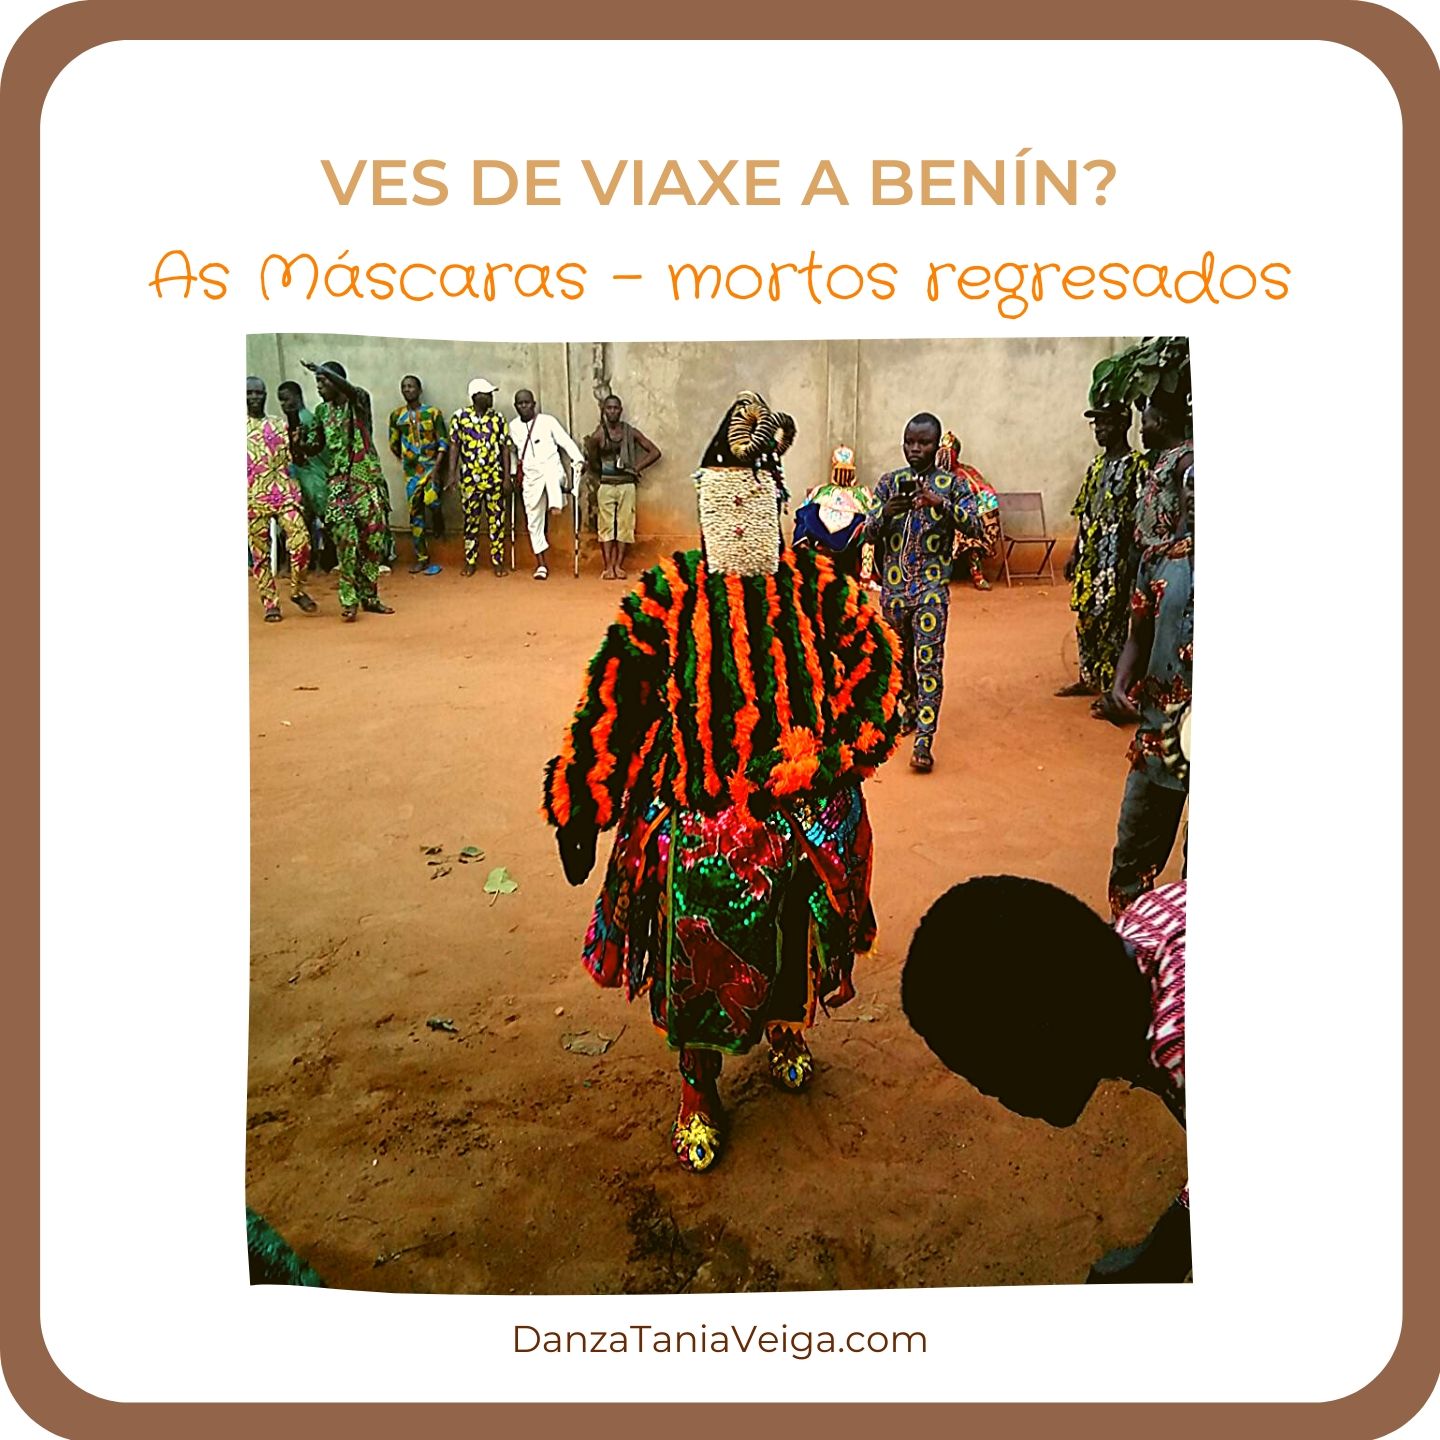 Viaxe a Benín Cerimonia Máscaras Mortos Regresados